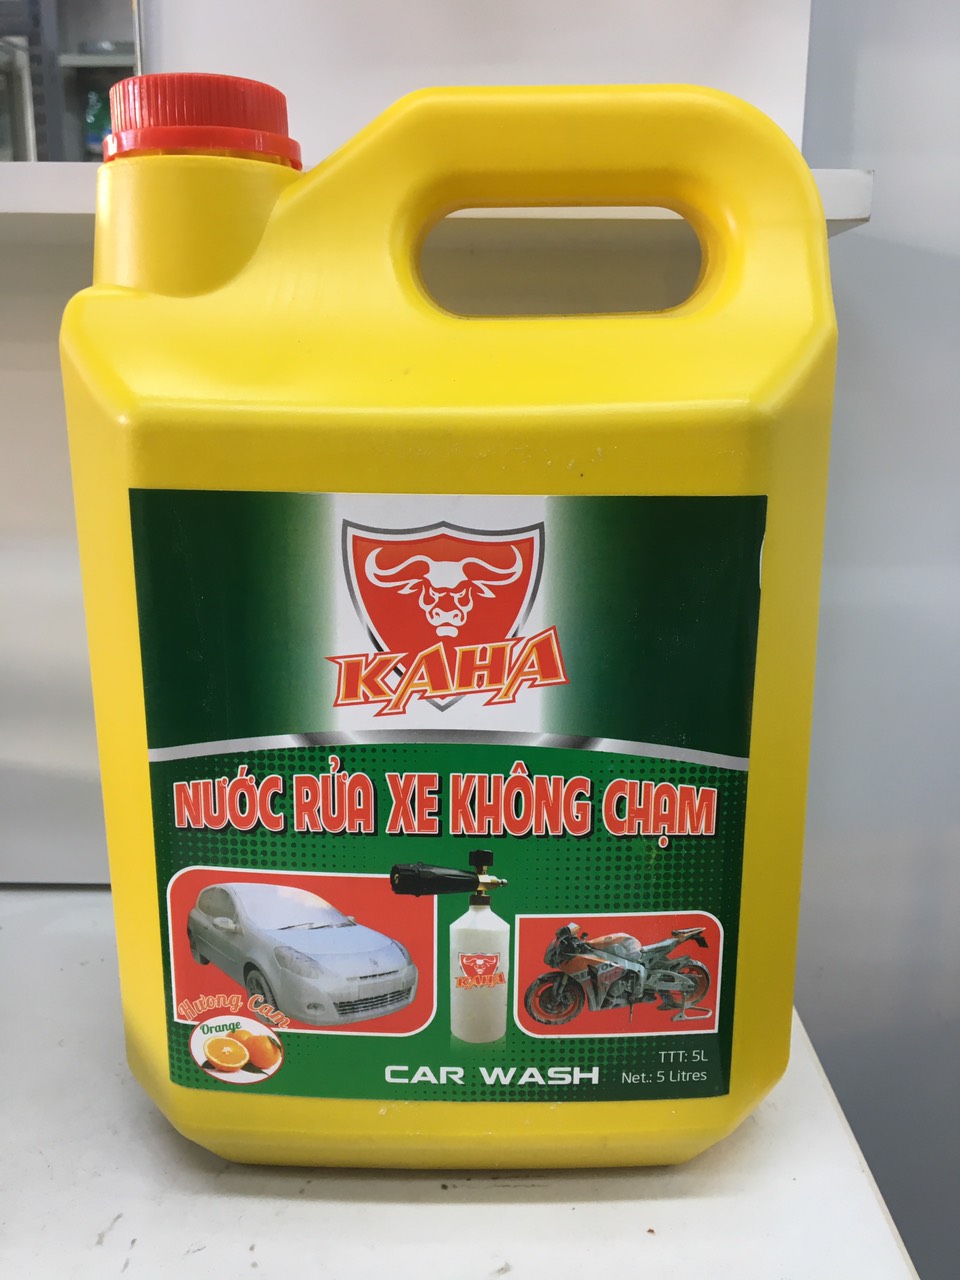 Nước rửa xe Kaha không chạm can 5 Lít dùng cho xe ô tô và xe máy chất lượng cao